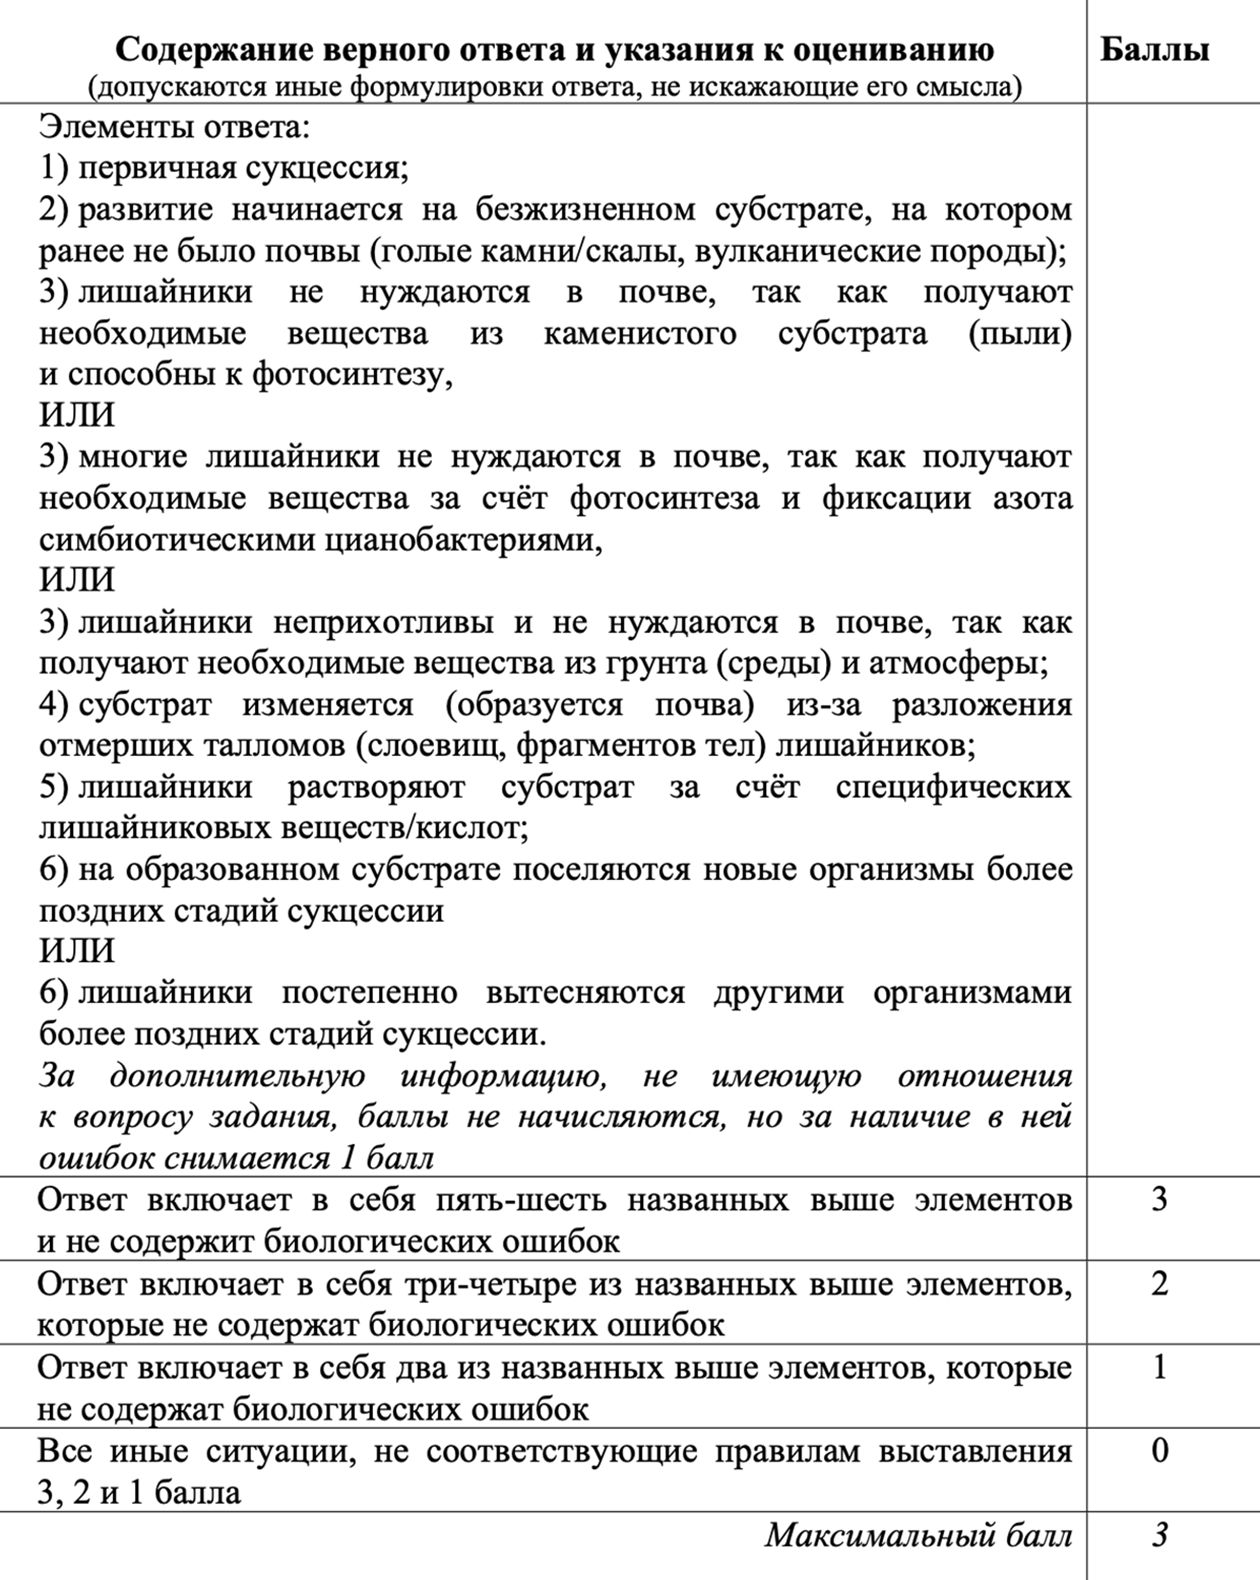 Пример трудного задания 26. Источник: fipi.ru